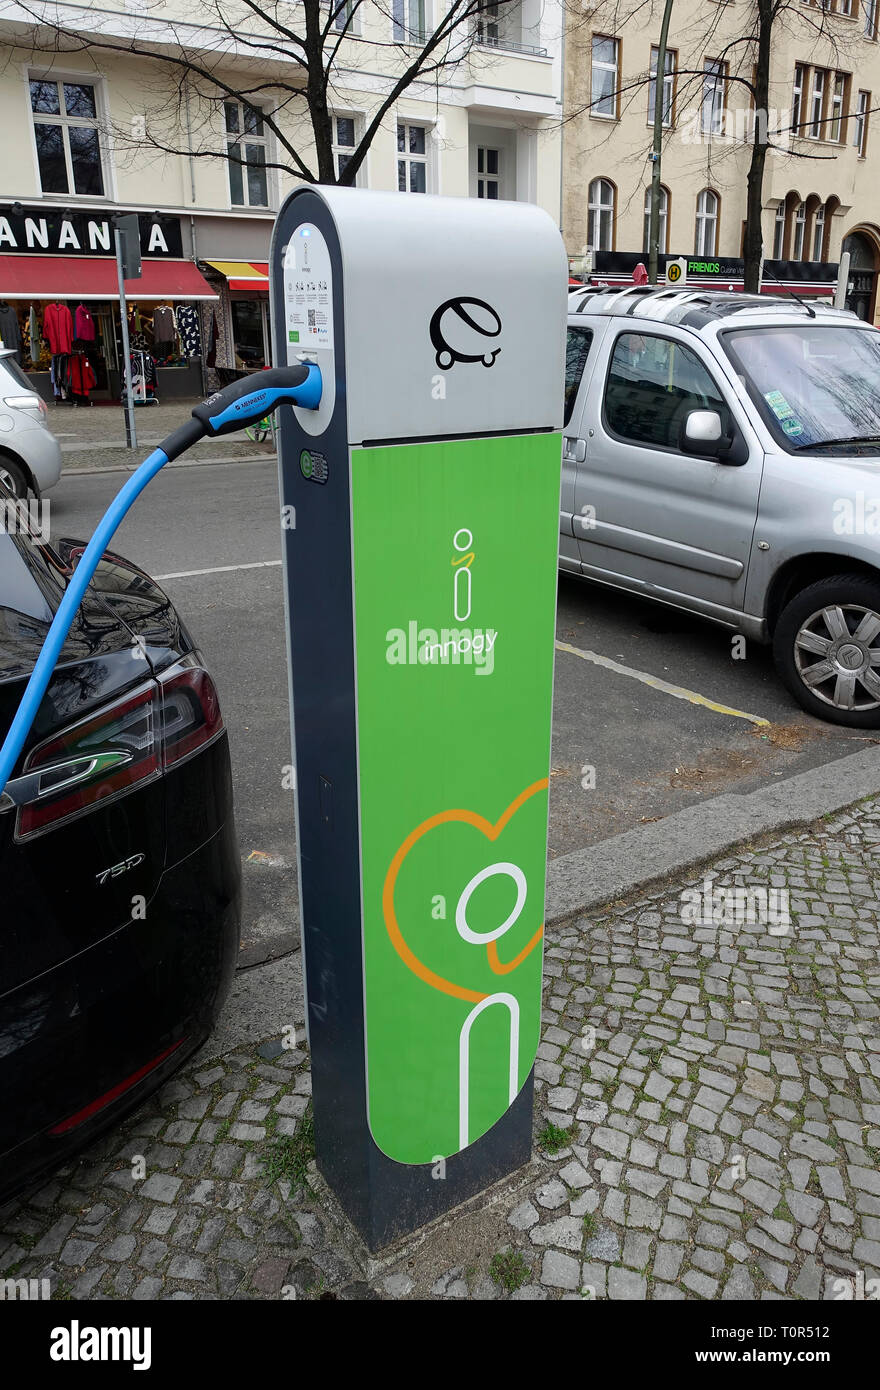 Ladestation von Innogy für Elektroautos in Berlin, Deutschland  Stockfotografie - Alamy